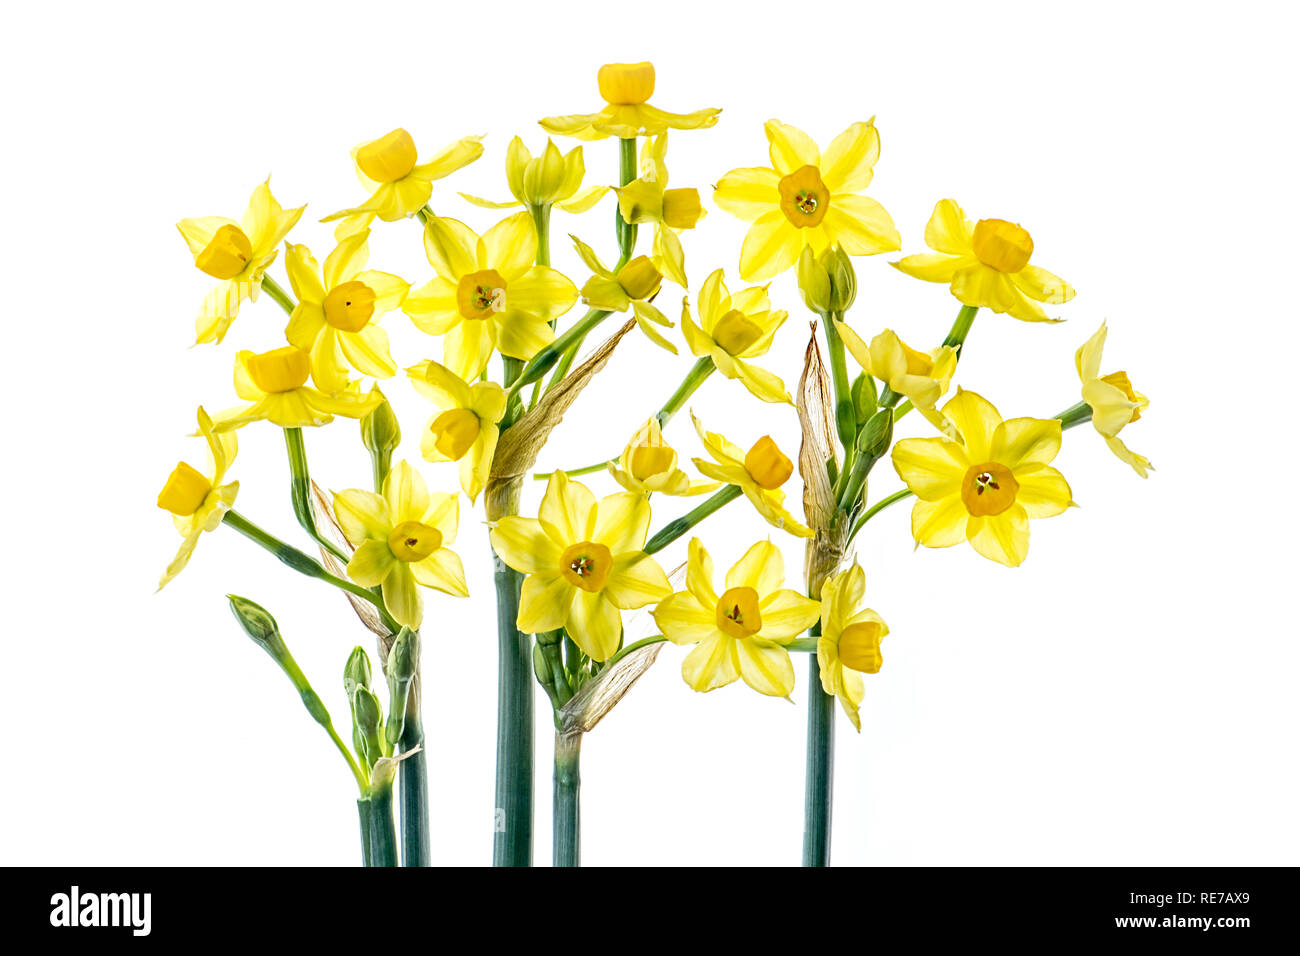 - Nahaufnahme, High-key-Bild von schöner Frühling blühende, gelbe Narzisse Blüten auch als Narziss bekannt Stockfoto